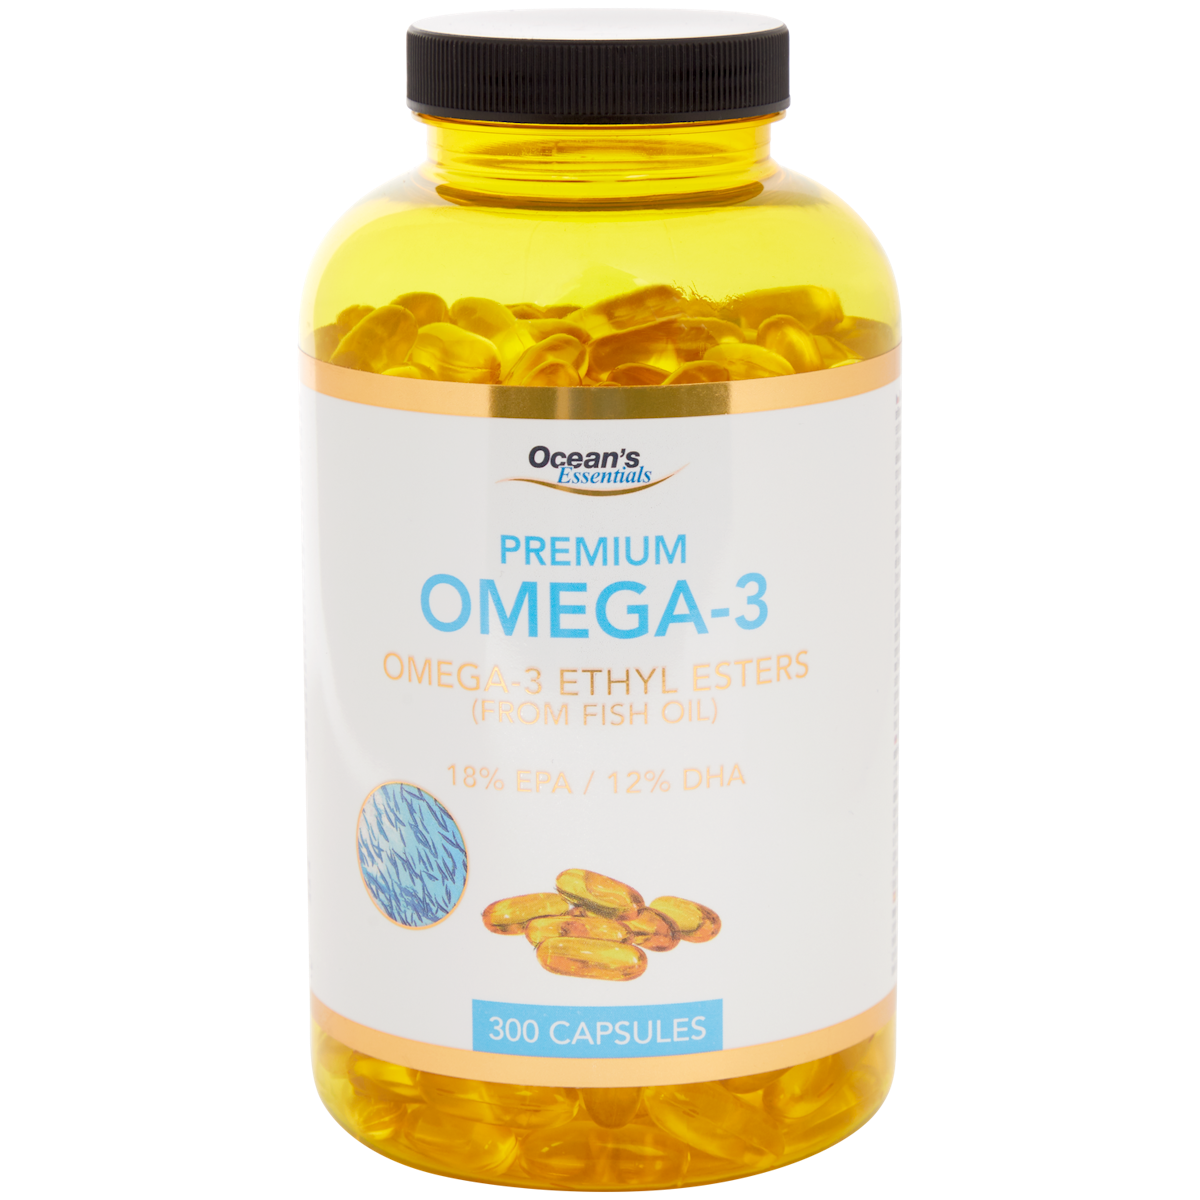 Ocean's Essentials Omega-3 visoliecapsules